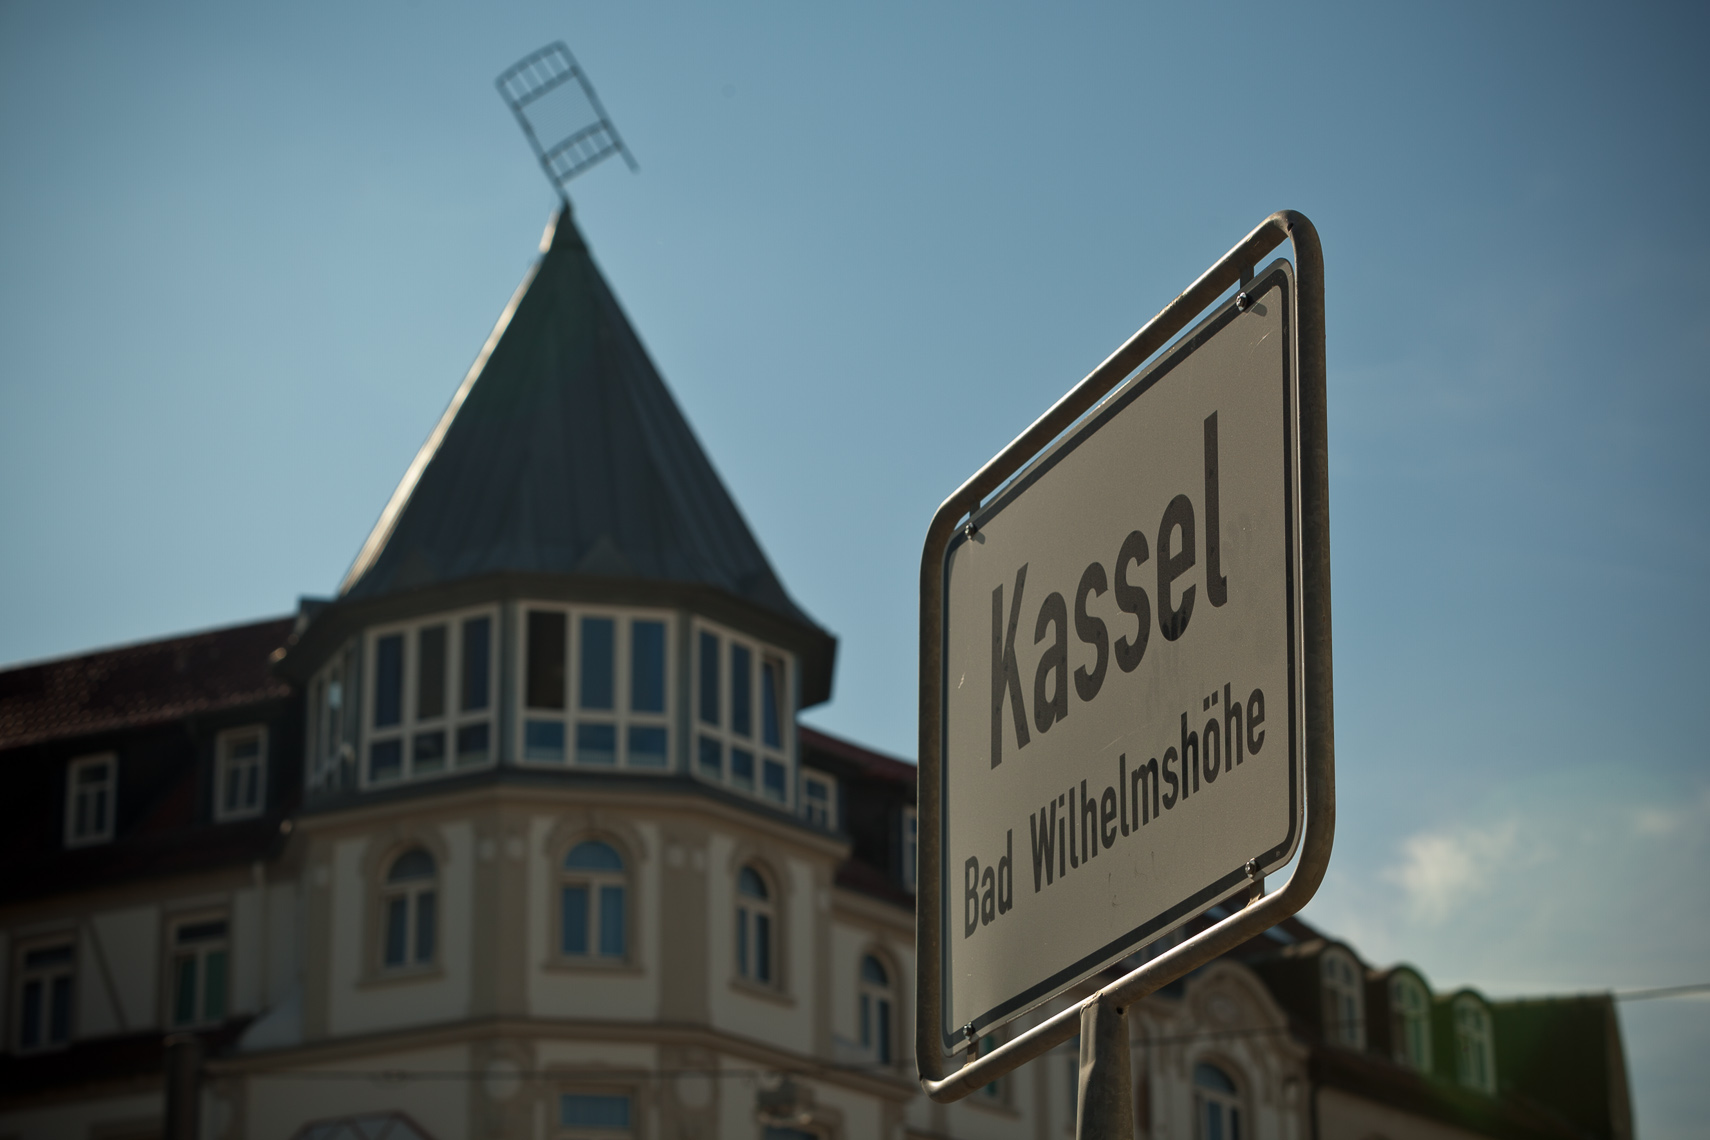 Kassel